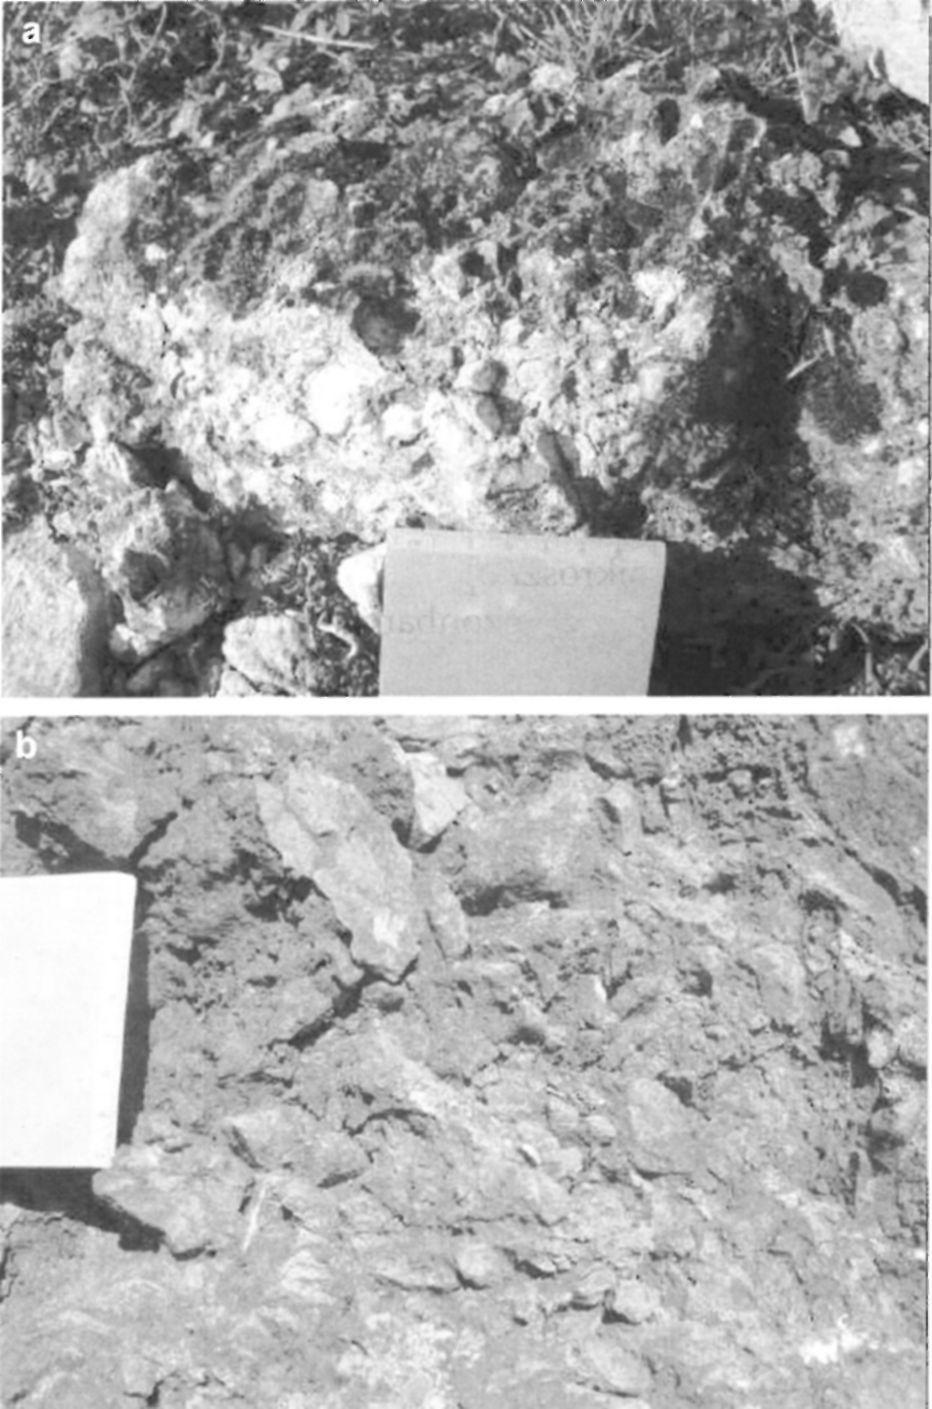 pont közelében, durvakristályos kalcittal cementálva, mely a terepen sárgás színével jól elkülönül a szintén jelenlévő fiatalabb kőzetréskitöltések fehéres kalcitjától, b = breccsás zóna (Bz) a 6.